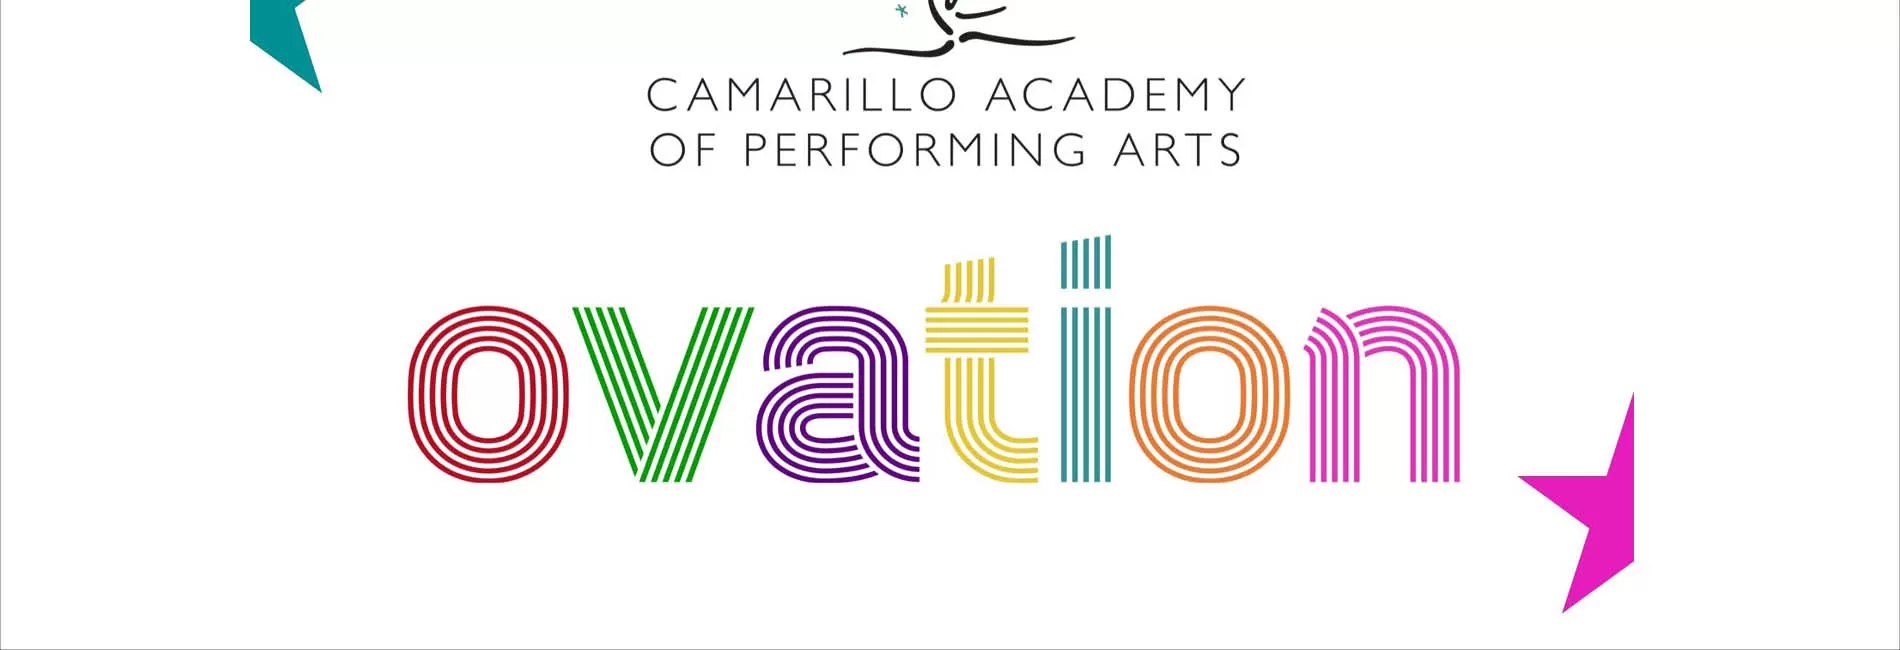 Camarillo Academy of Performing Arts Recital